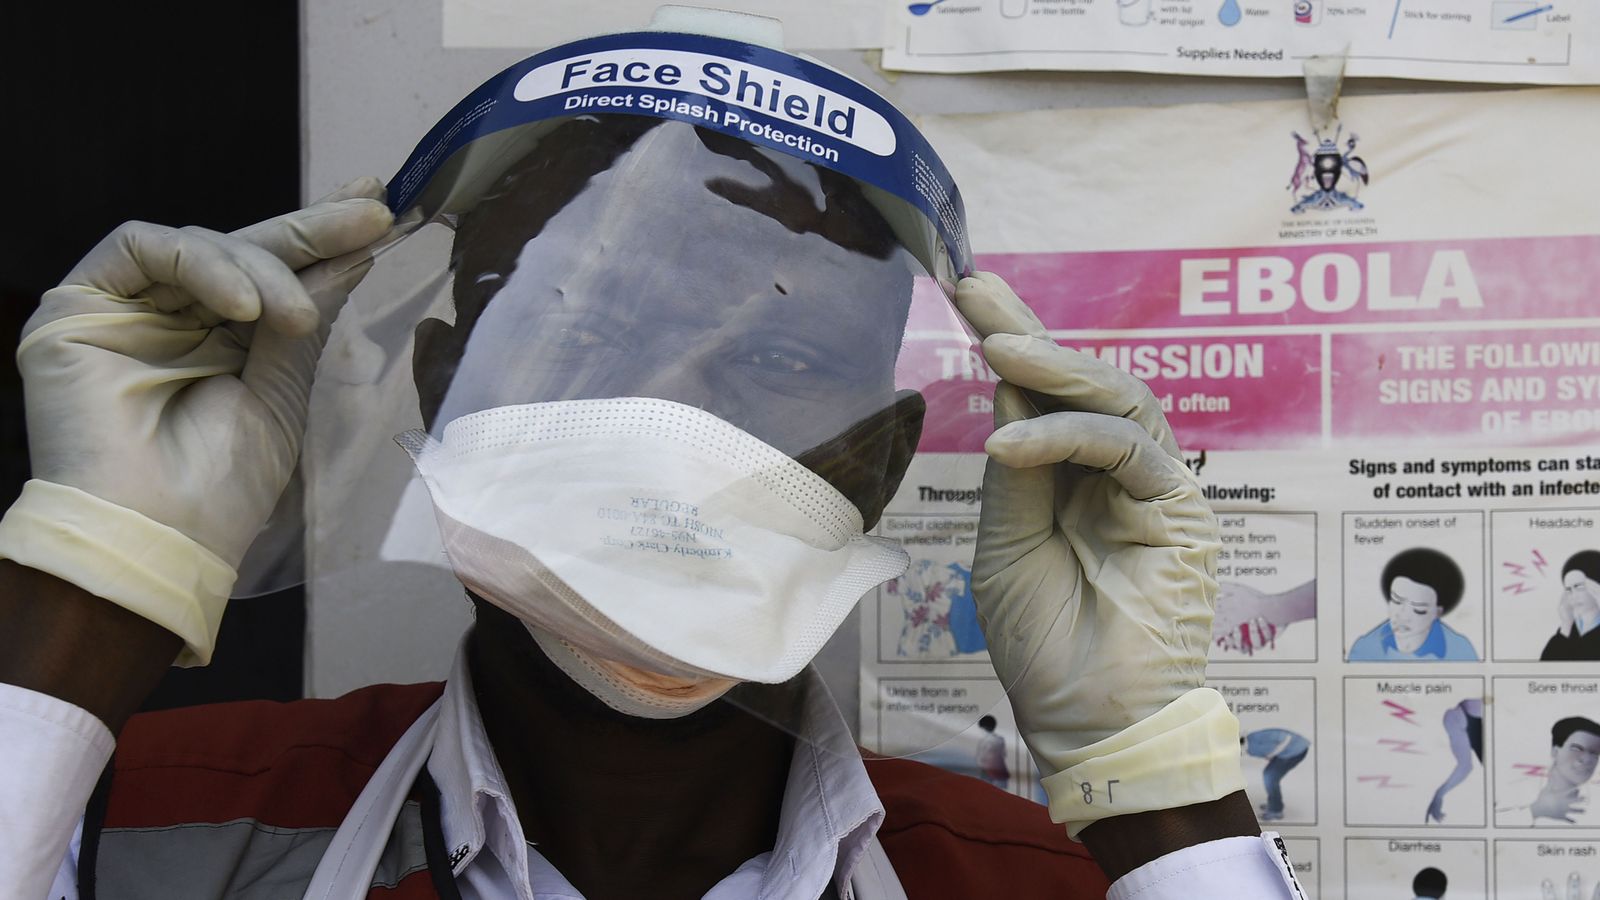 Ebola outbreak declared after Uganda finds